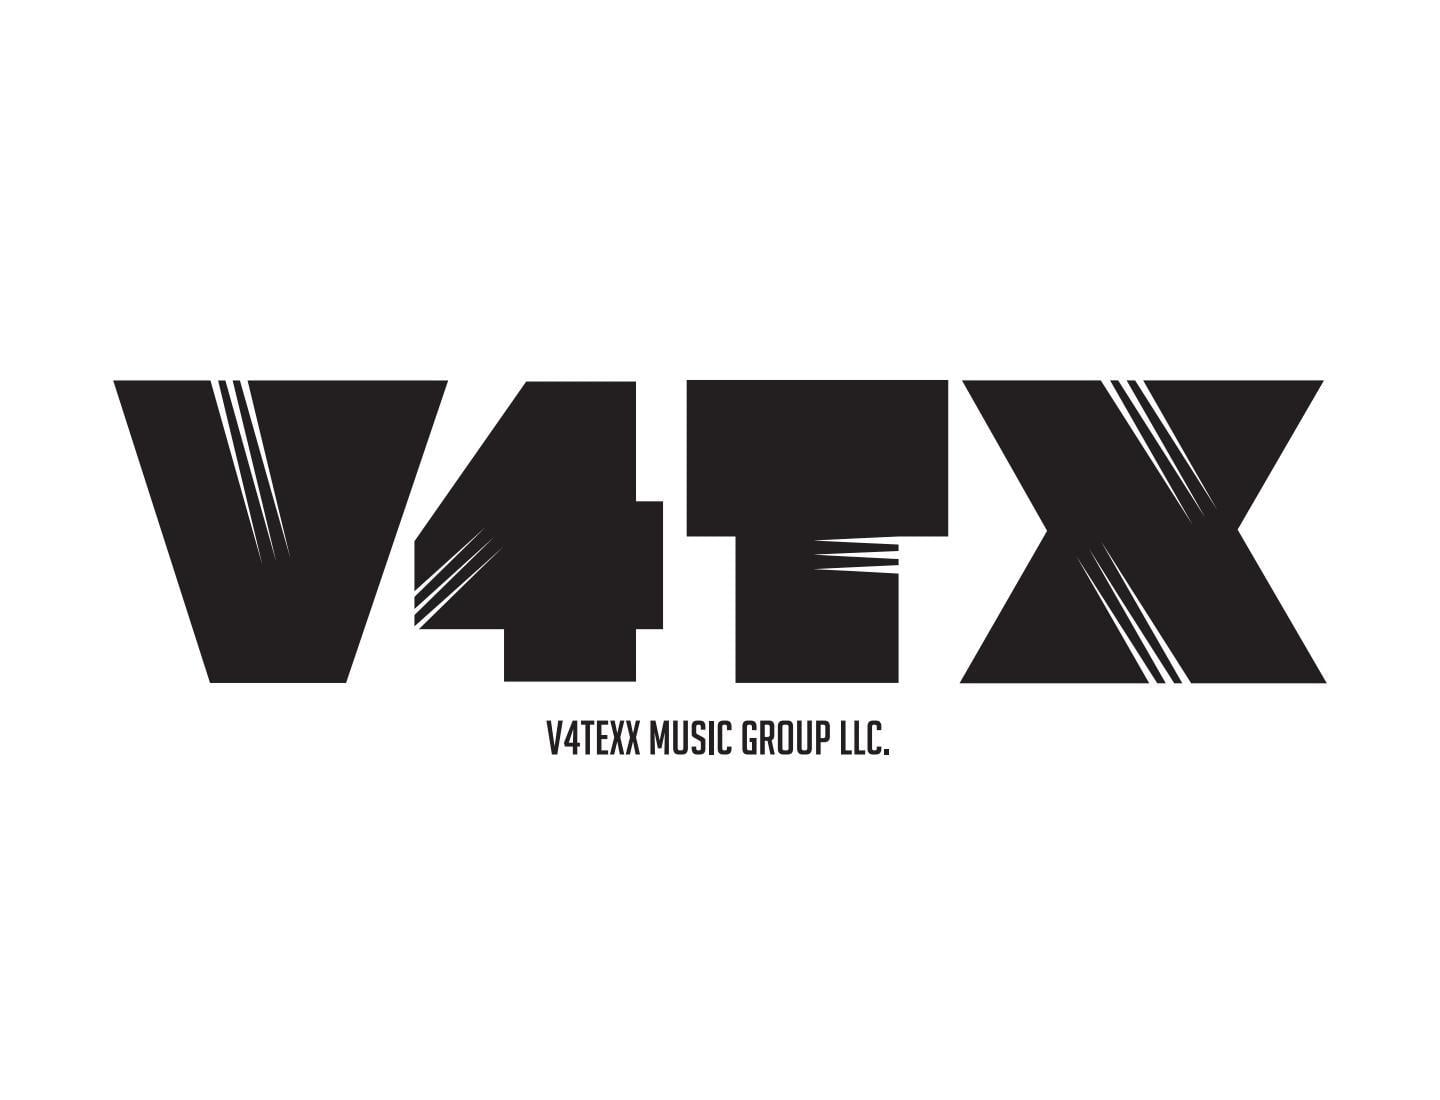 V4texx Music Group Logo